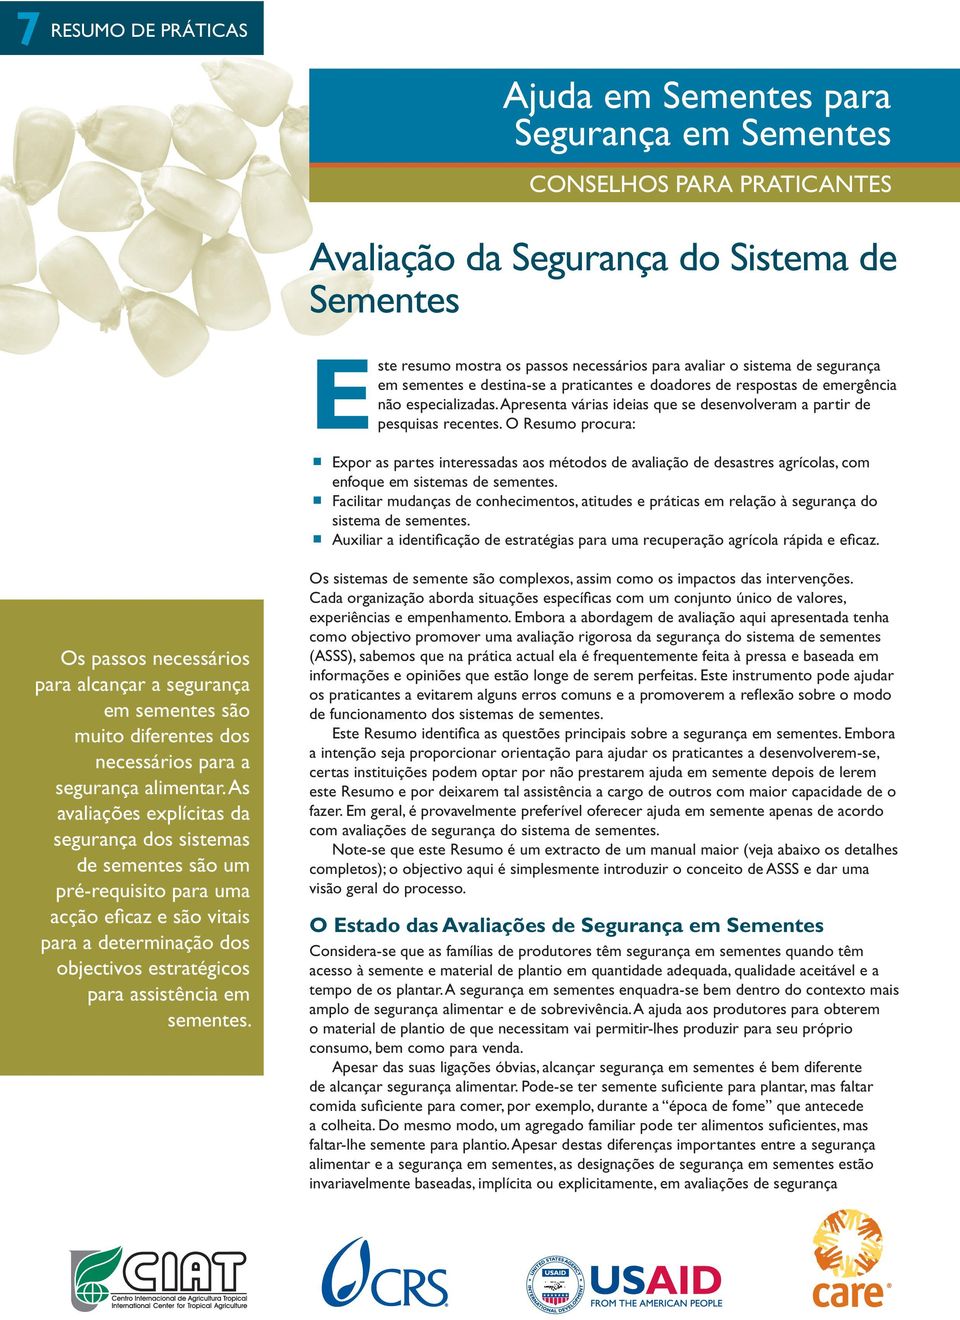 O Resumo procura: Expor as partes interessadas aos métodos de avaliação de desastres agrícolas, com enfoque em sistemas de sementes.